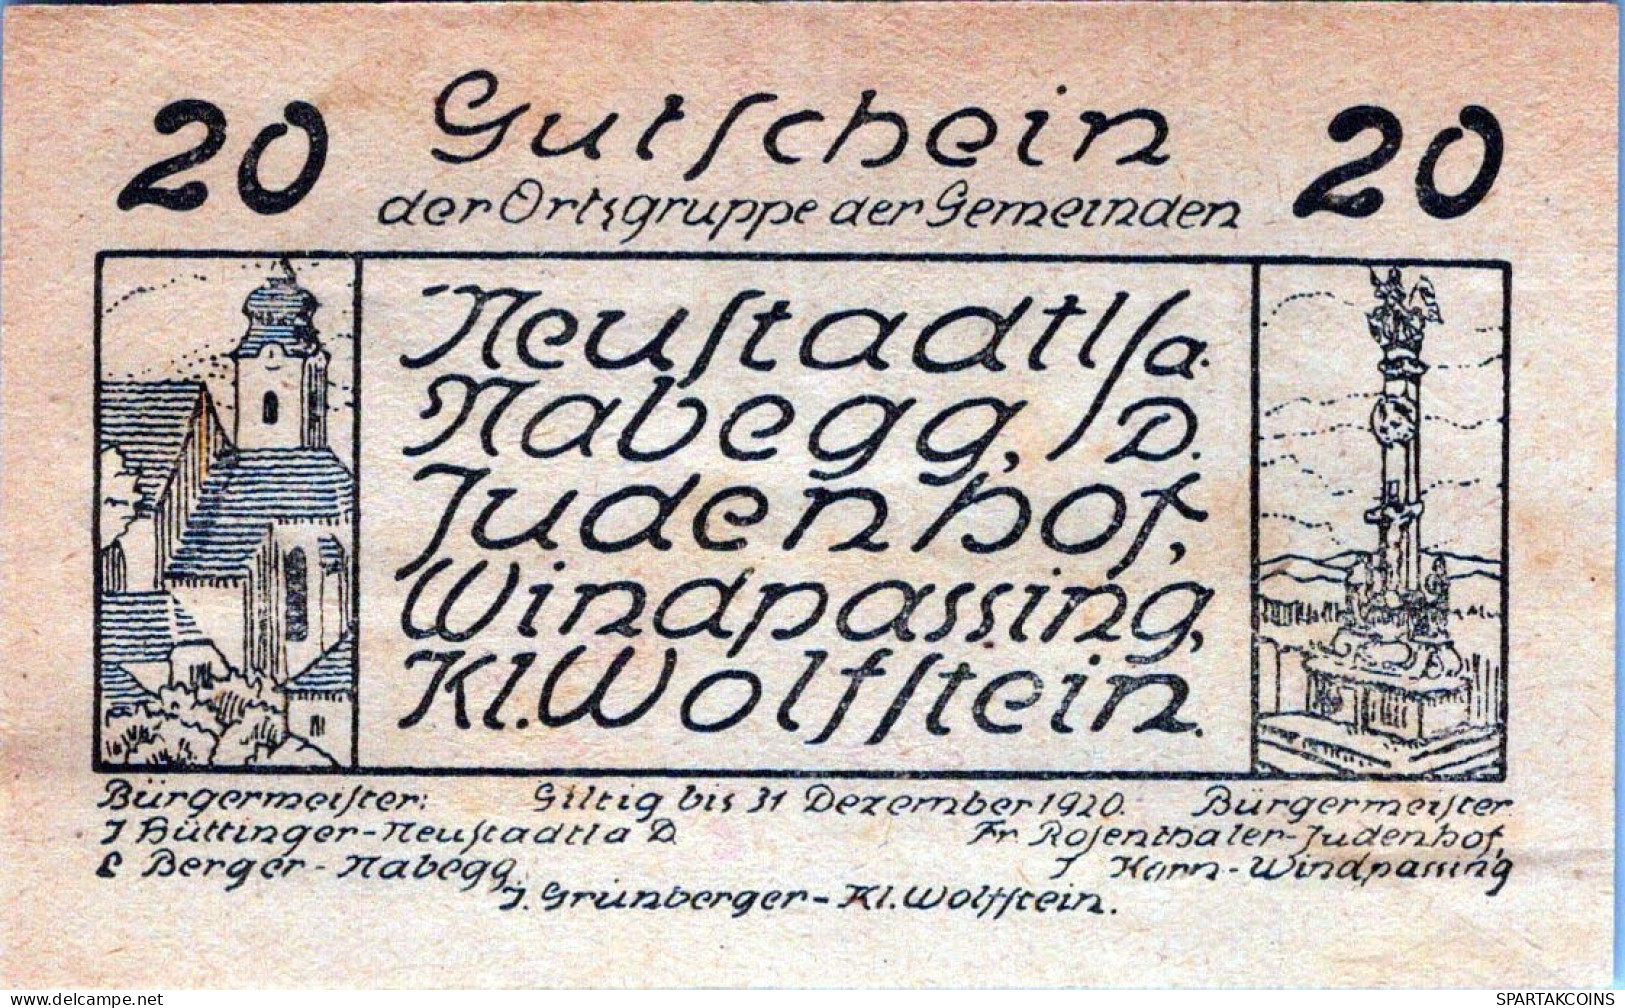 20 HELLER 1920 Stadt NEUSTADTL AN DER DONAU NABEGG JUDENHOF Österreich #PE425 - [11] Local Banknote Issues